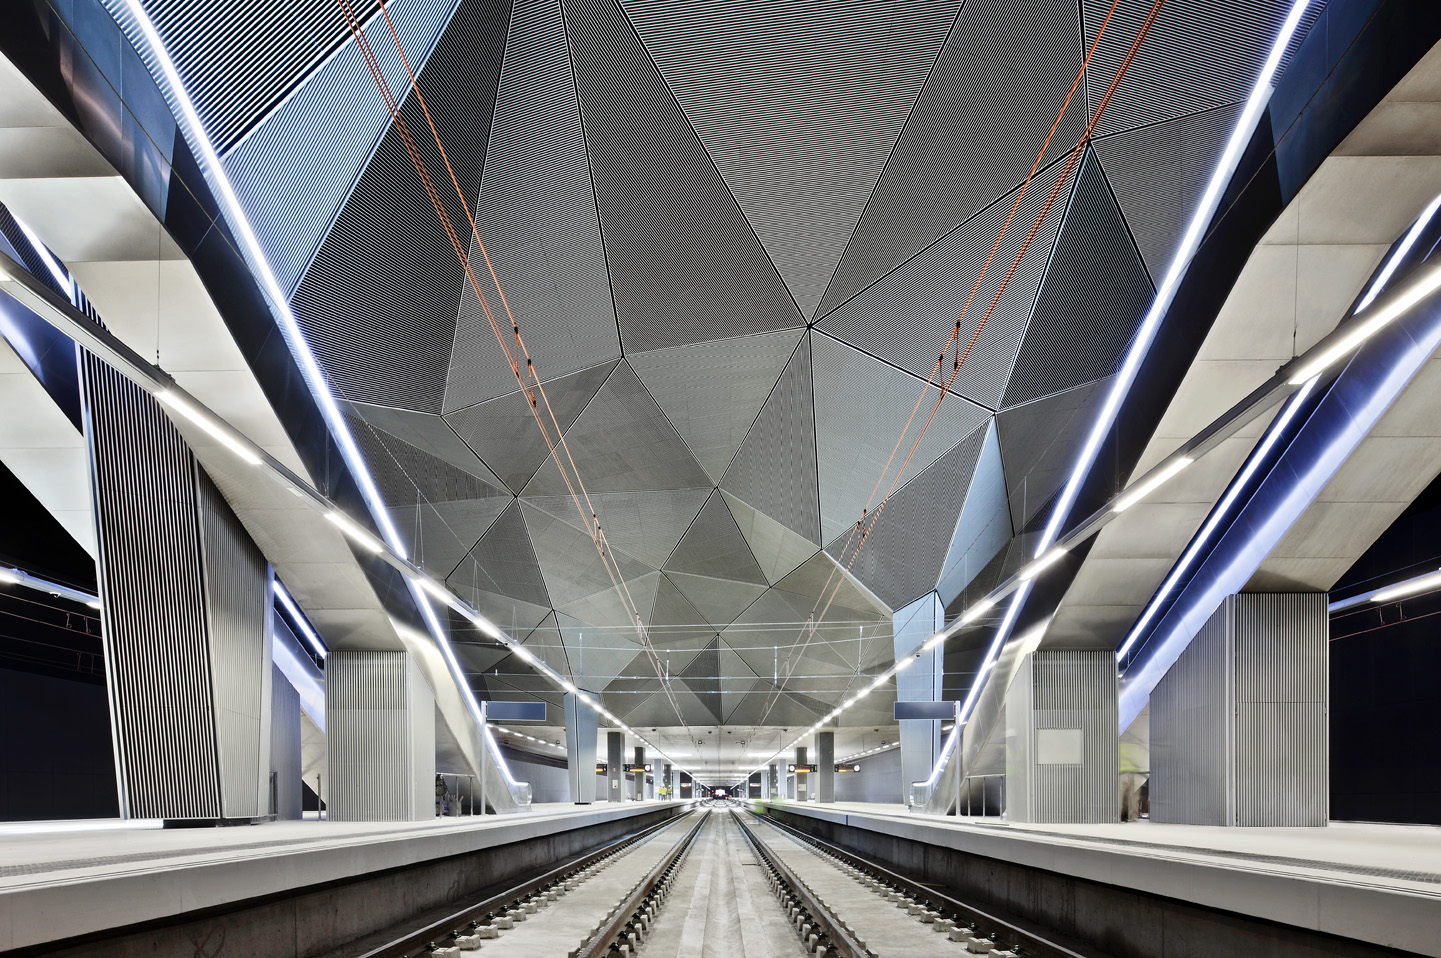 Imagen del interior de la Estación de Tren, andenes. José Hevia, 2011